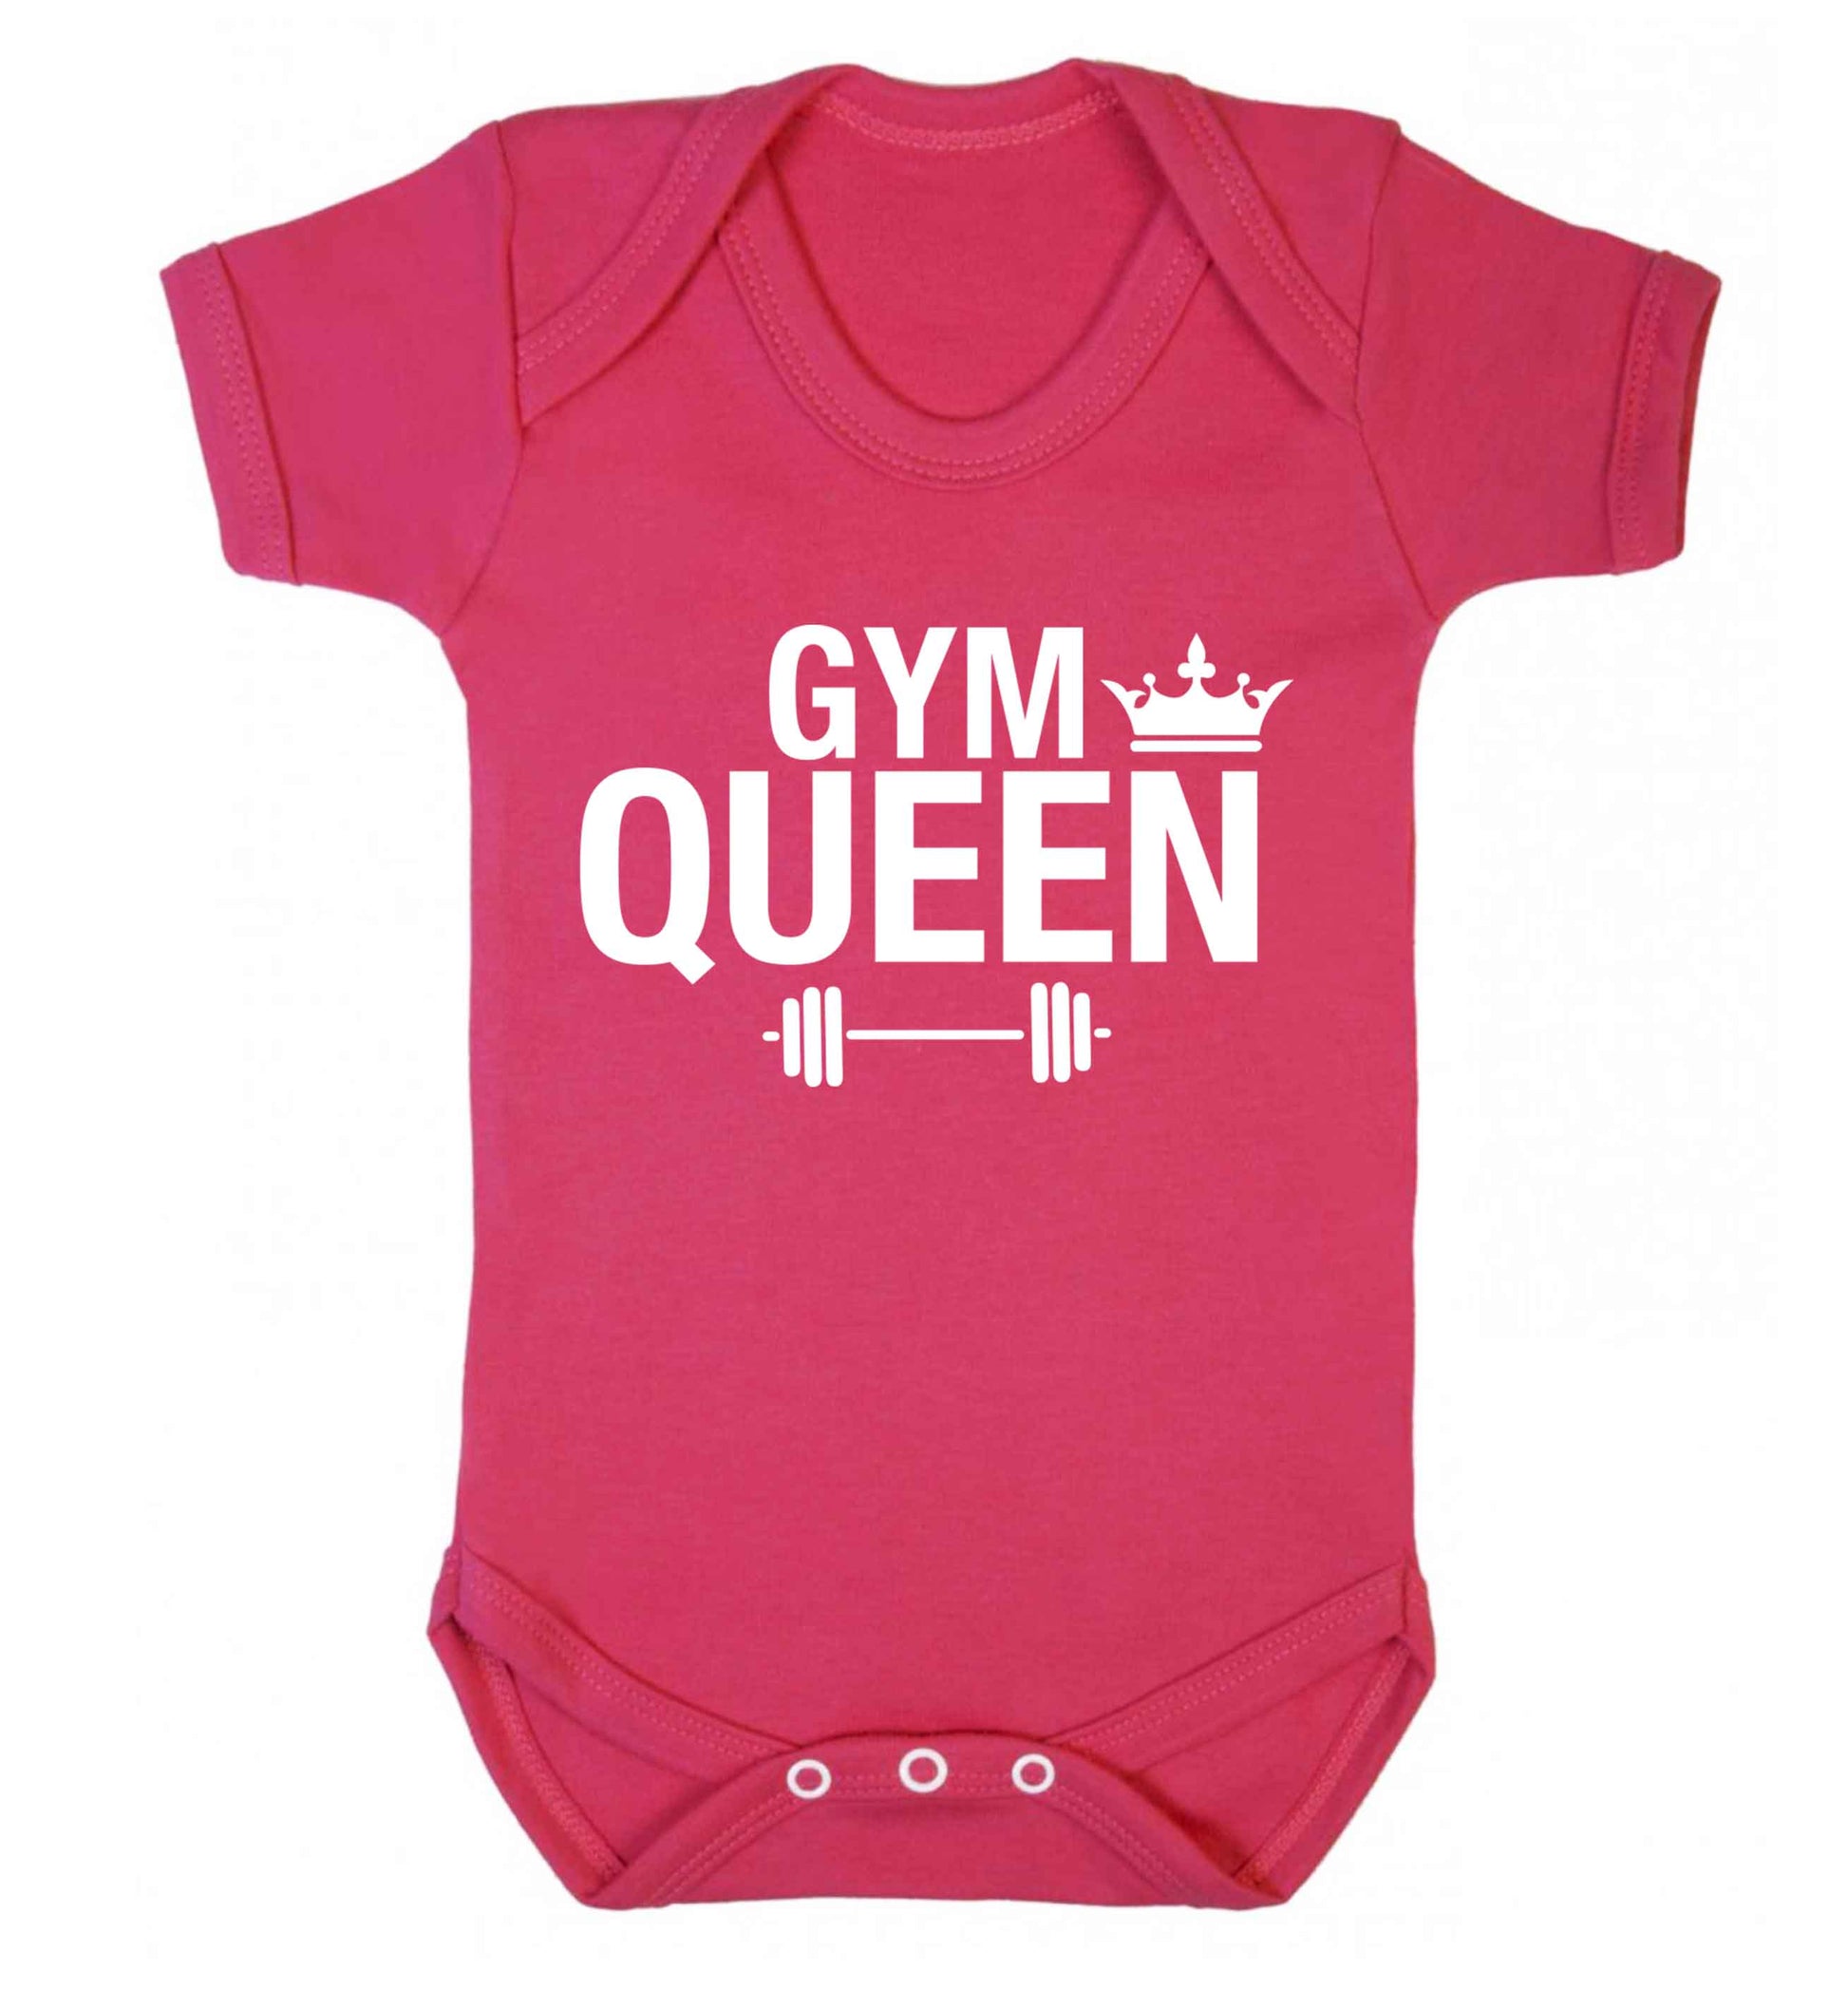 Gym queen Baby Vest dark pink 18-24 months